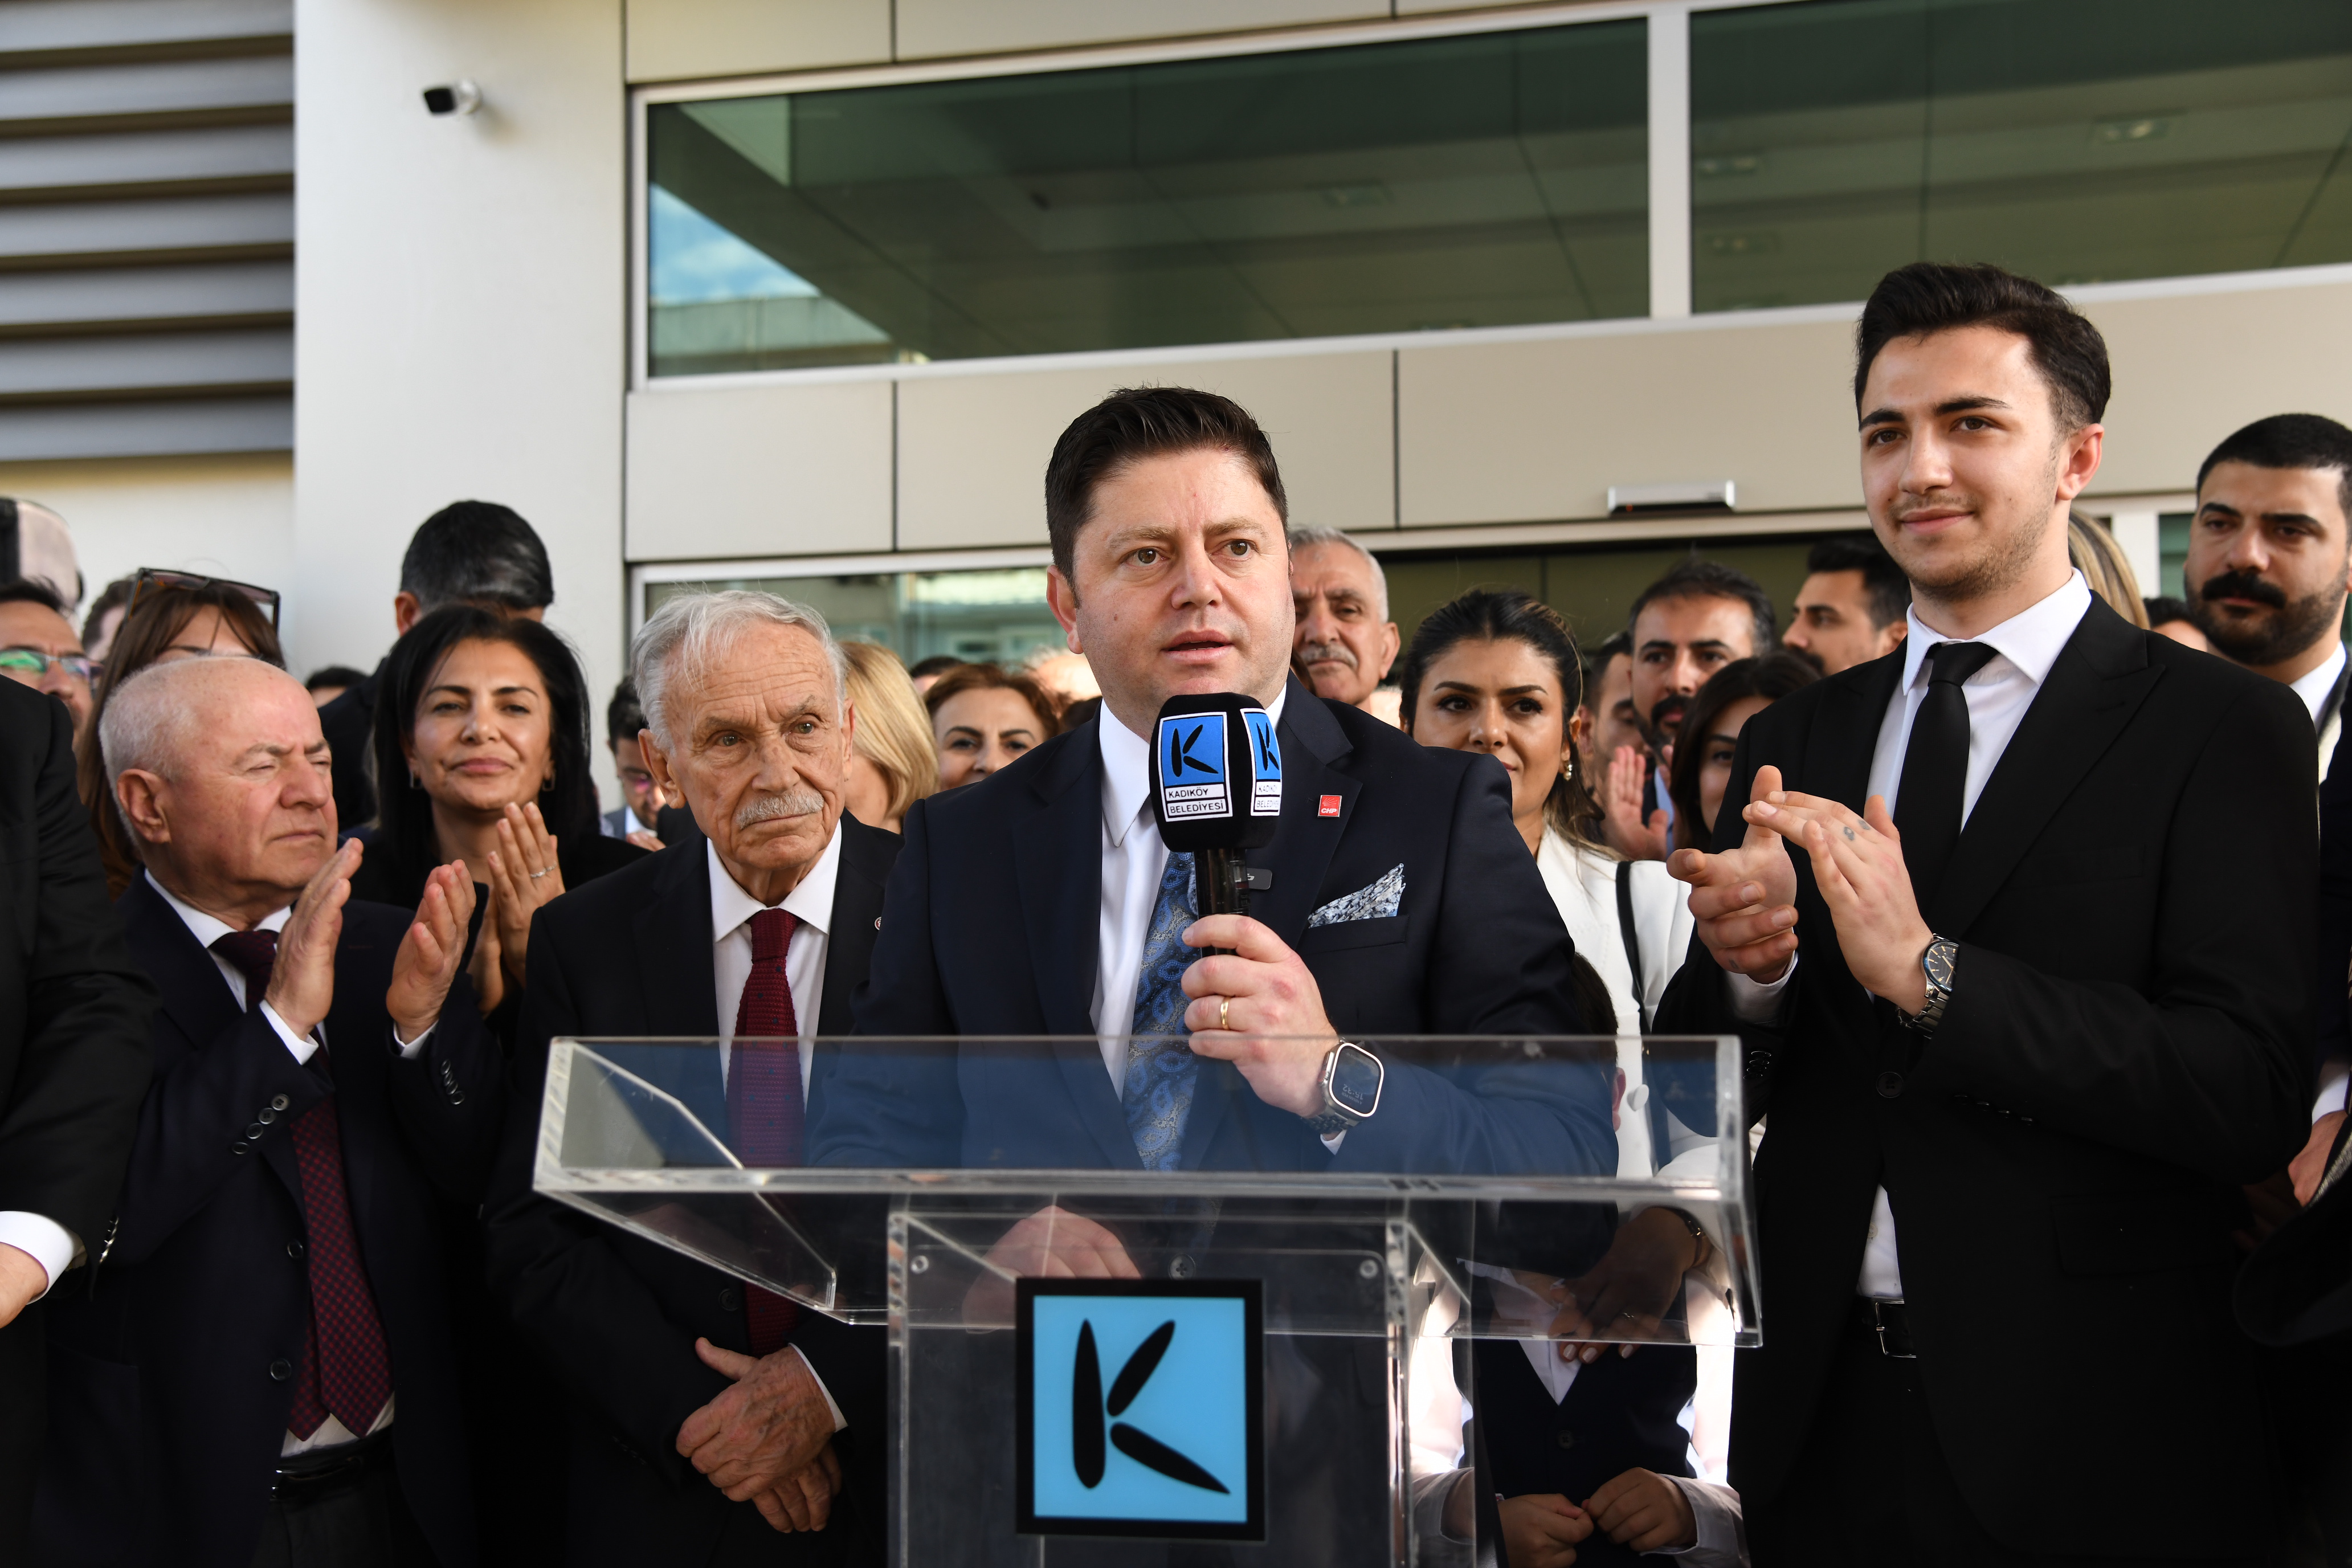  Kadıköy Belediyesi'nde görev değişimi: Mesut Kösedağı görevine başladı 